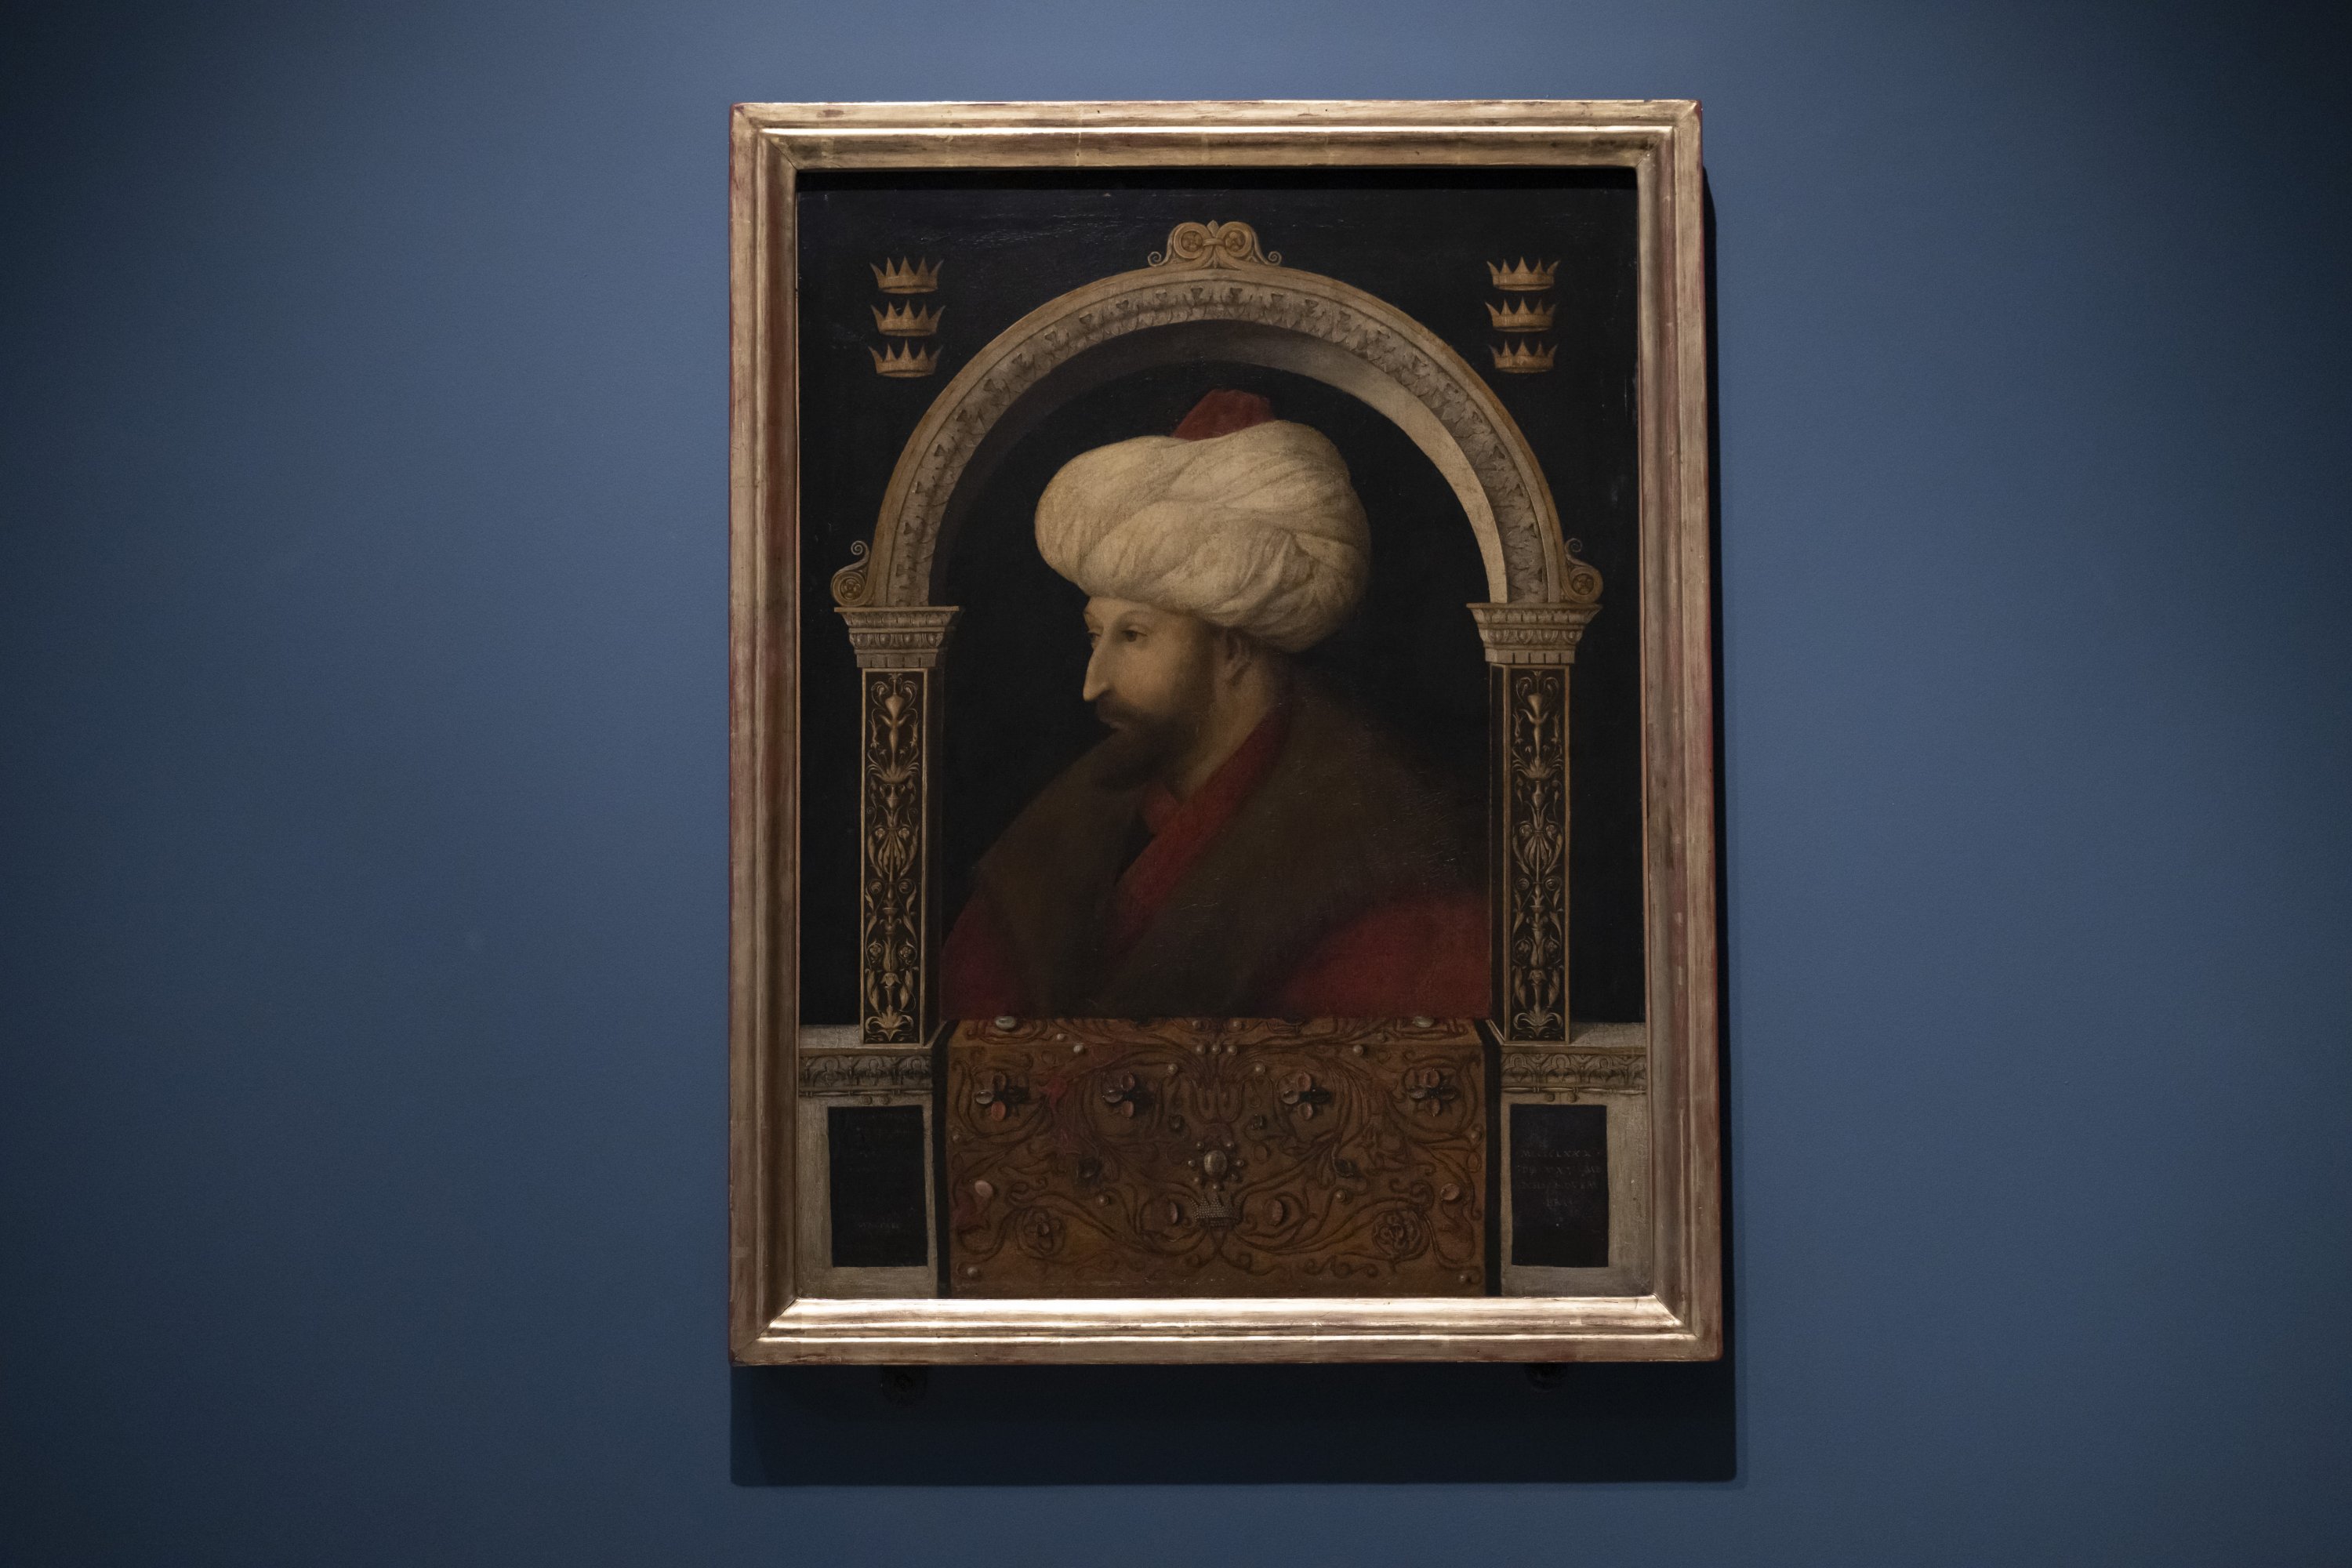 Italian painter Bellini's portrait of Sultan Mehmed II on exhibition ...